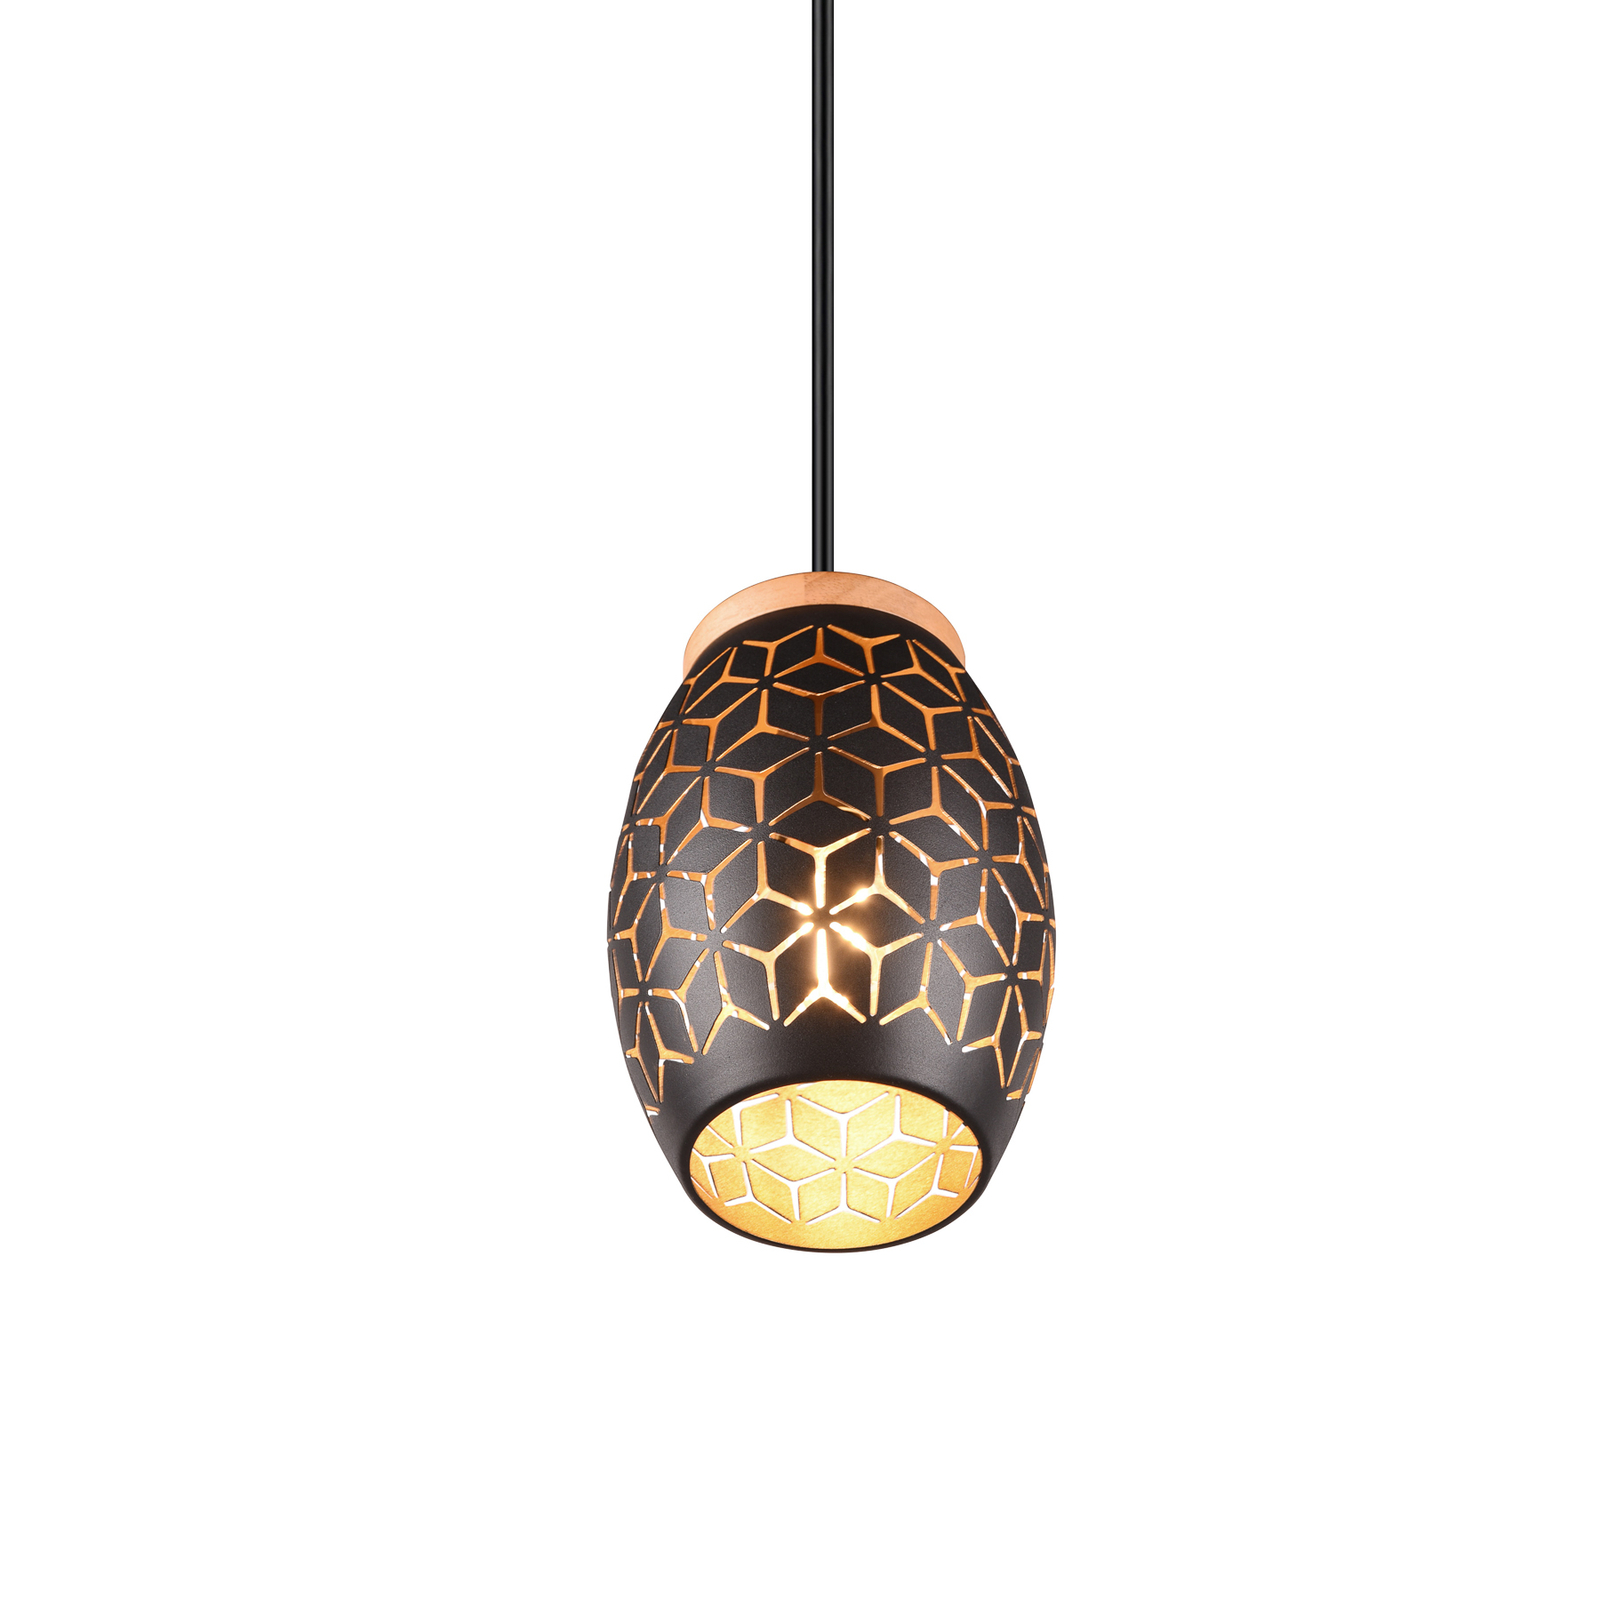 Bidar hanglamp, Ø 15 cm, zwart-goud, metaal